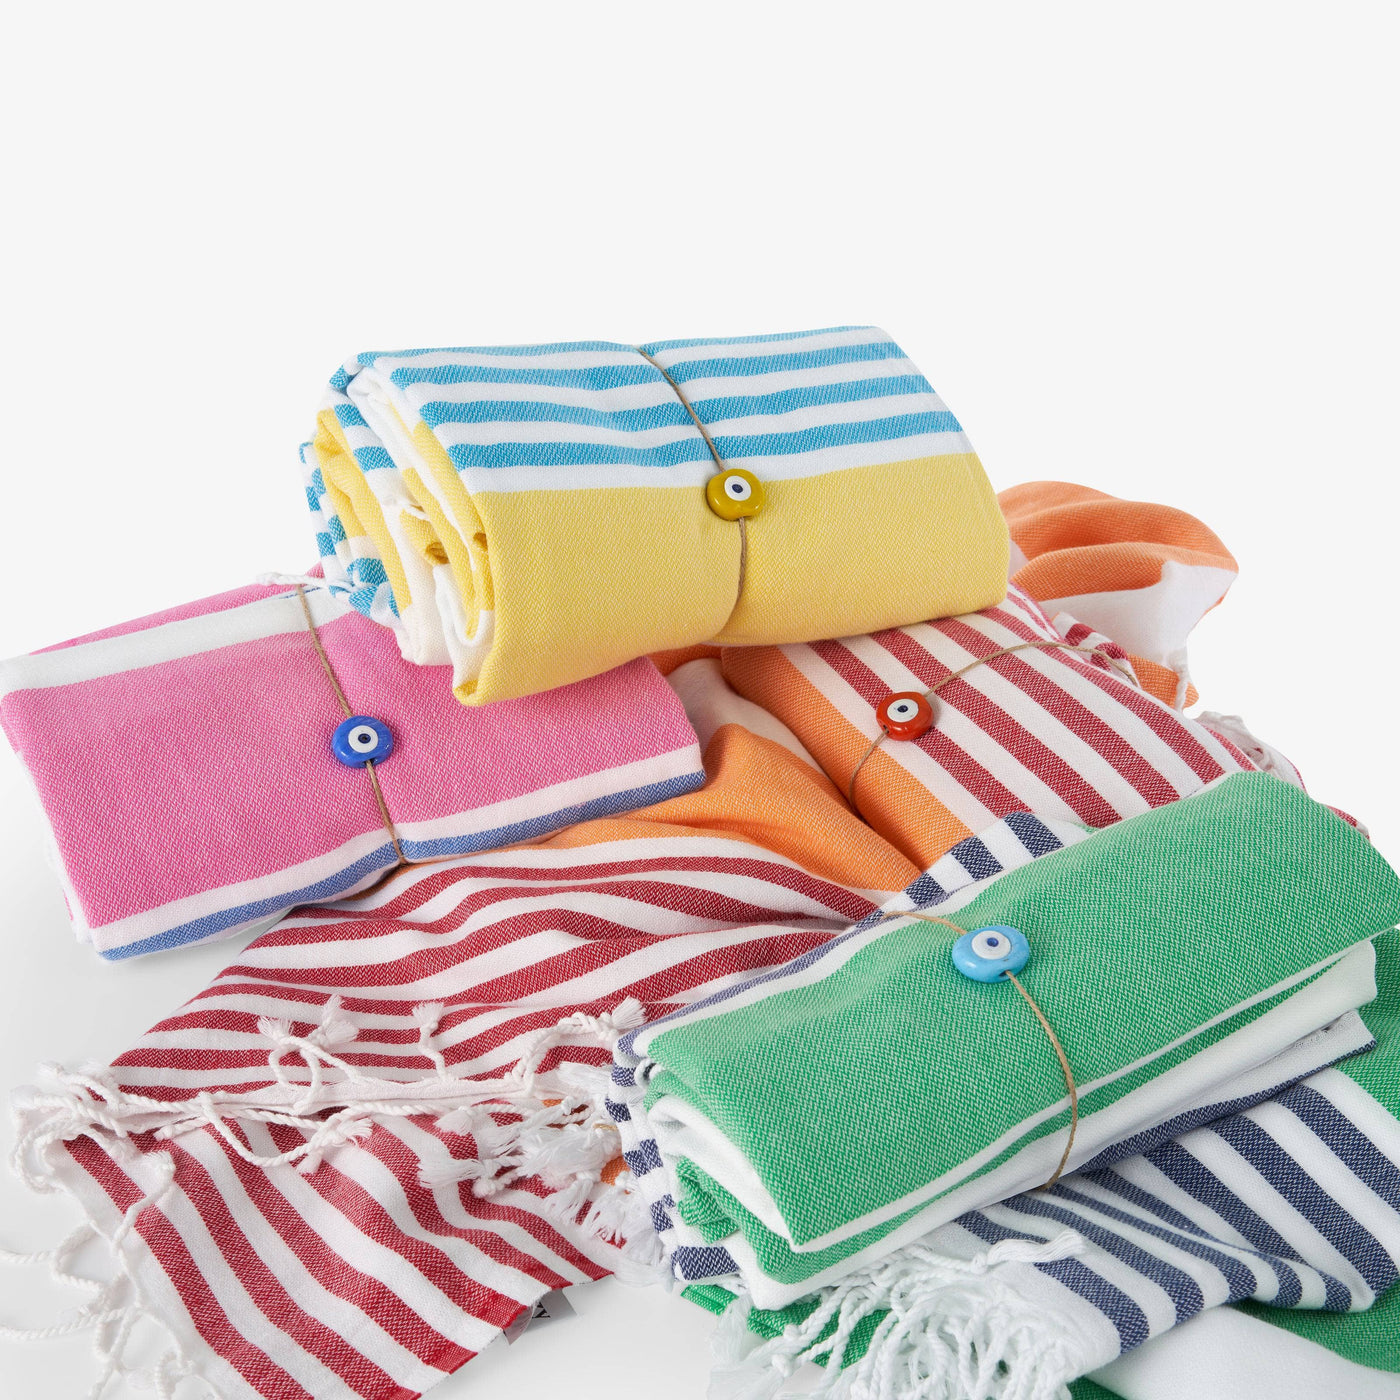 Bagnante Set of 2 Beach Towel, Yellow - Blue Beach Towels sazy.com